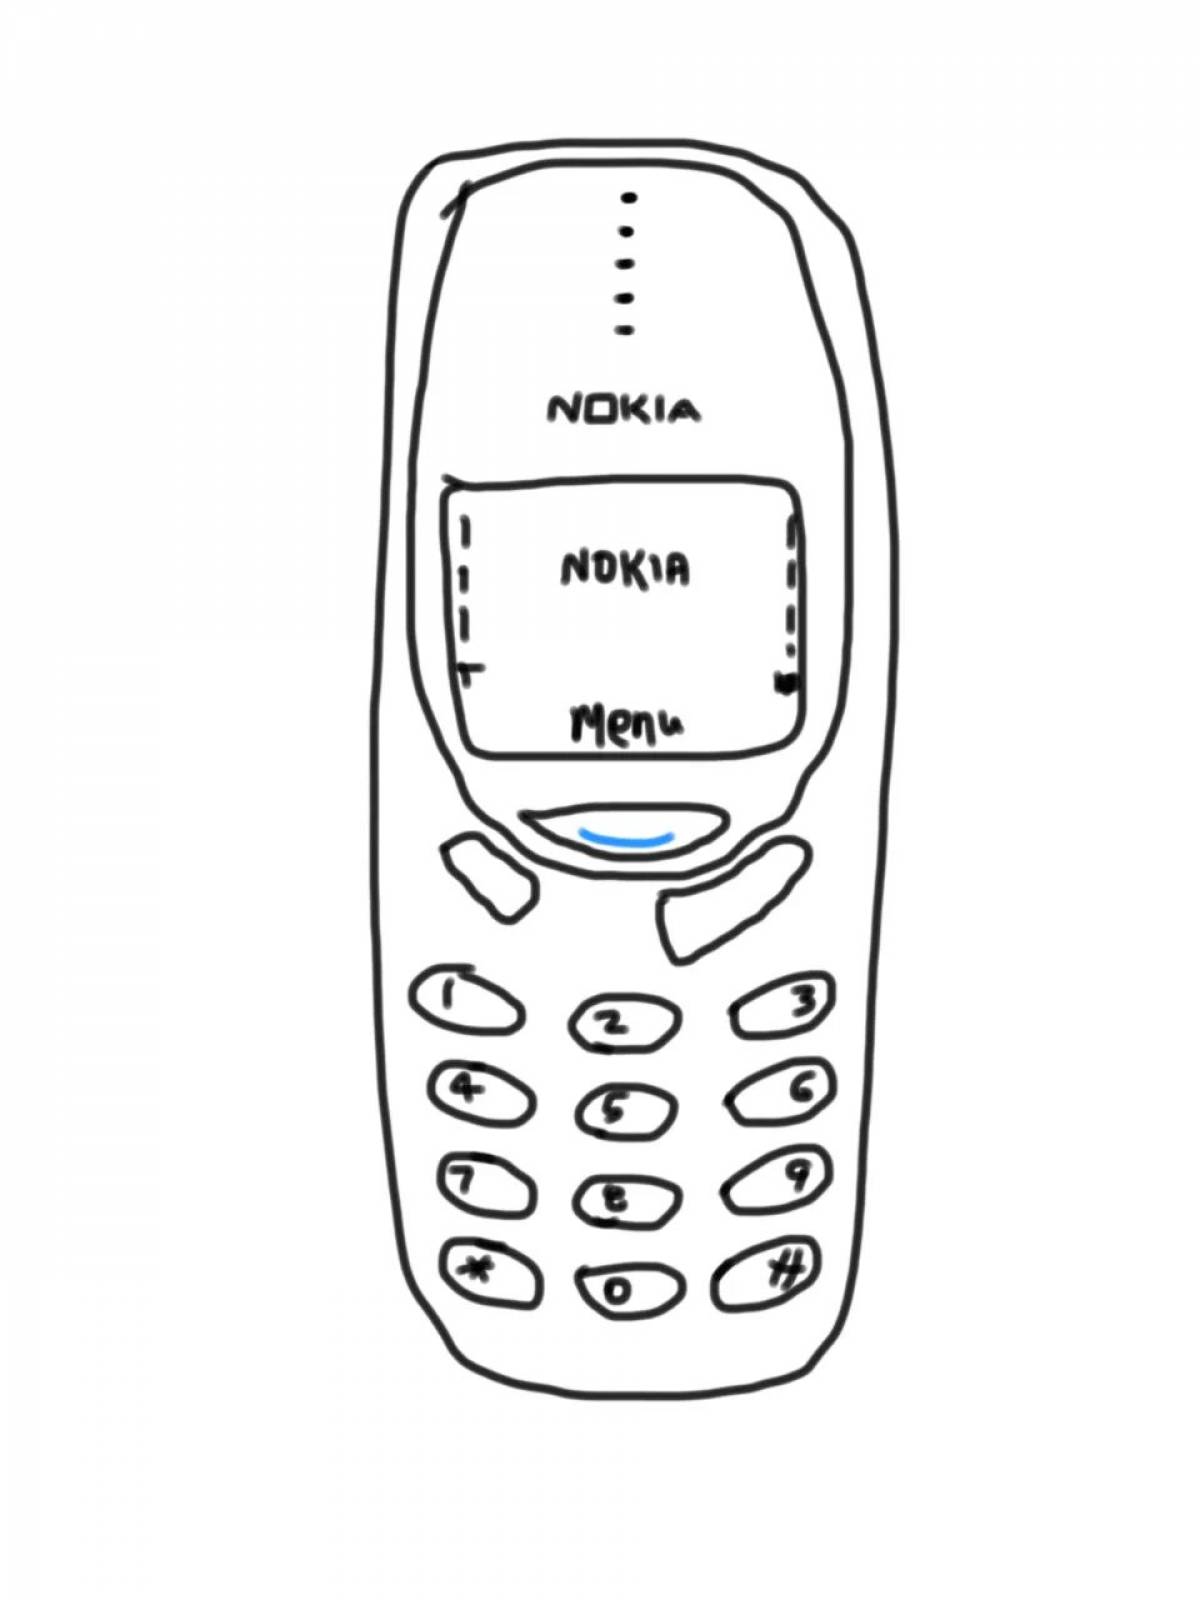 Nokia #5